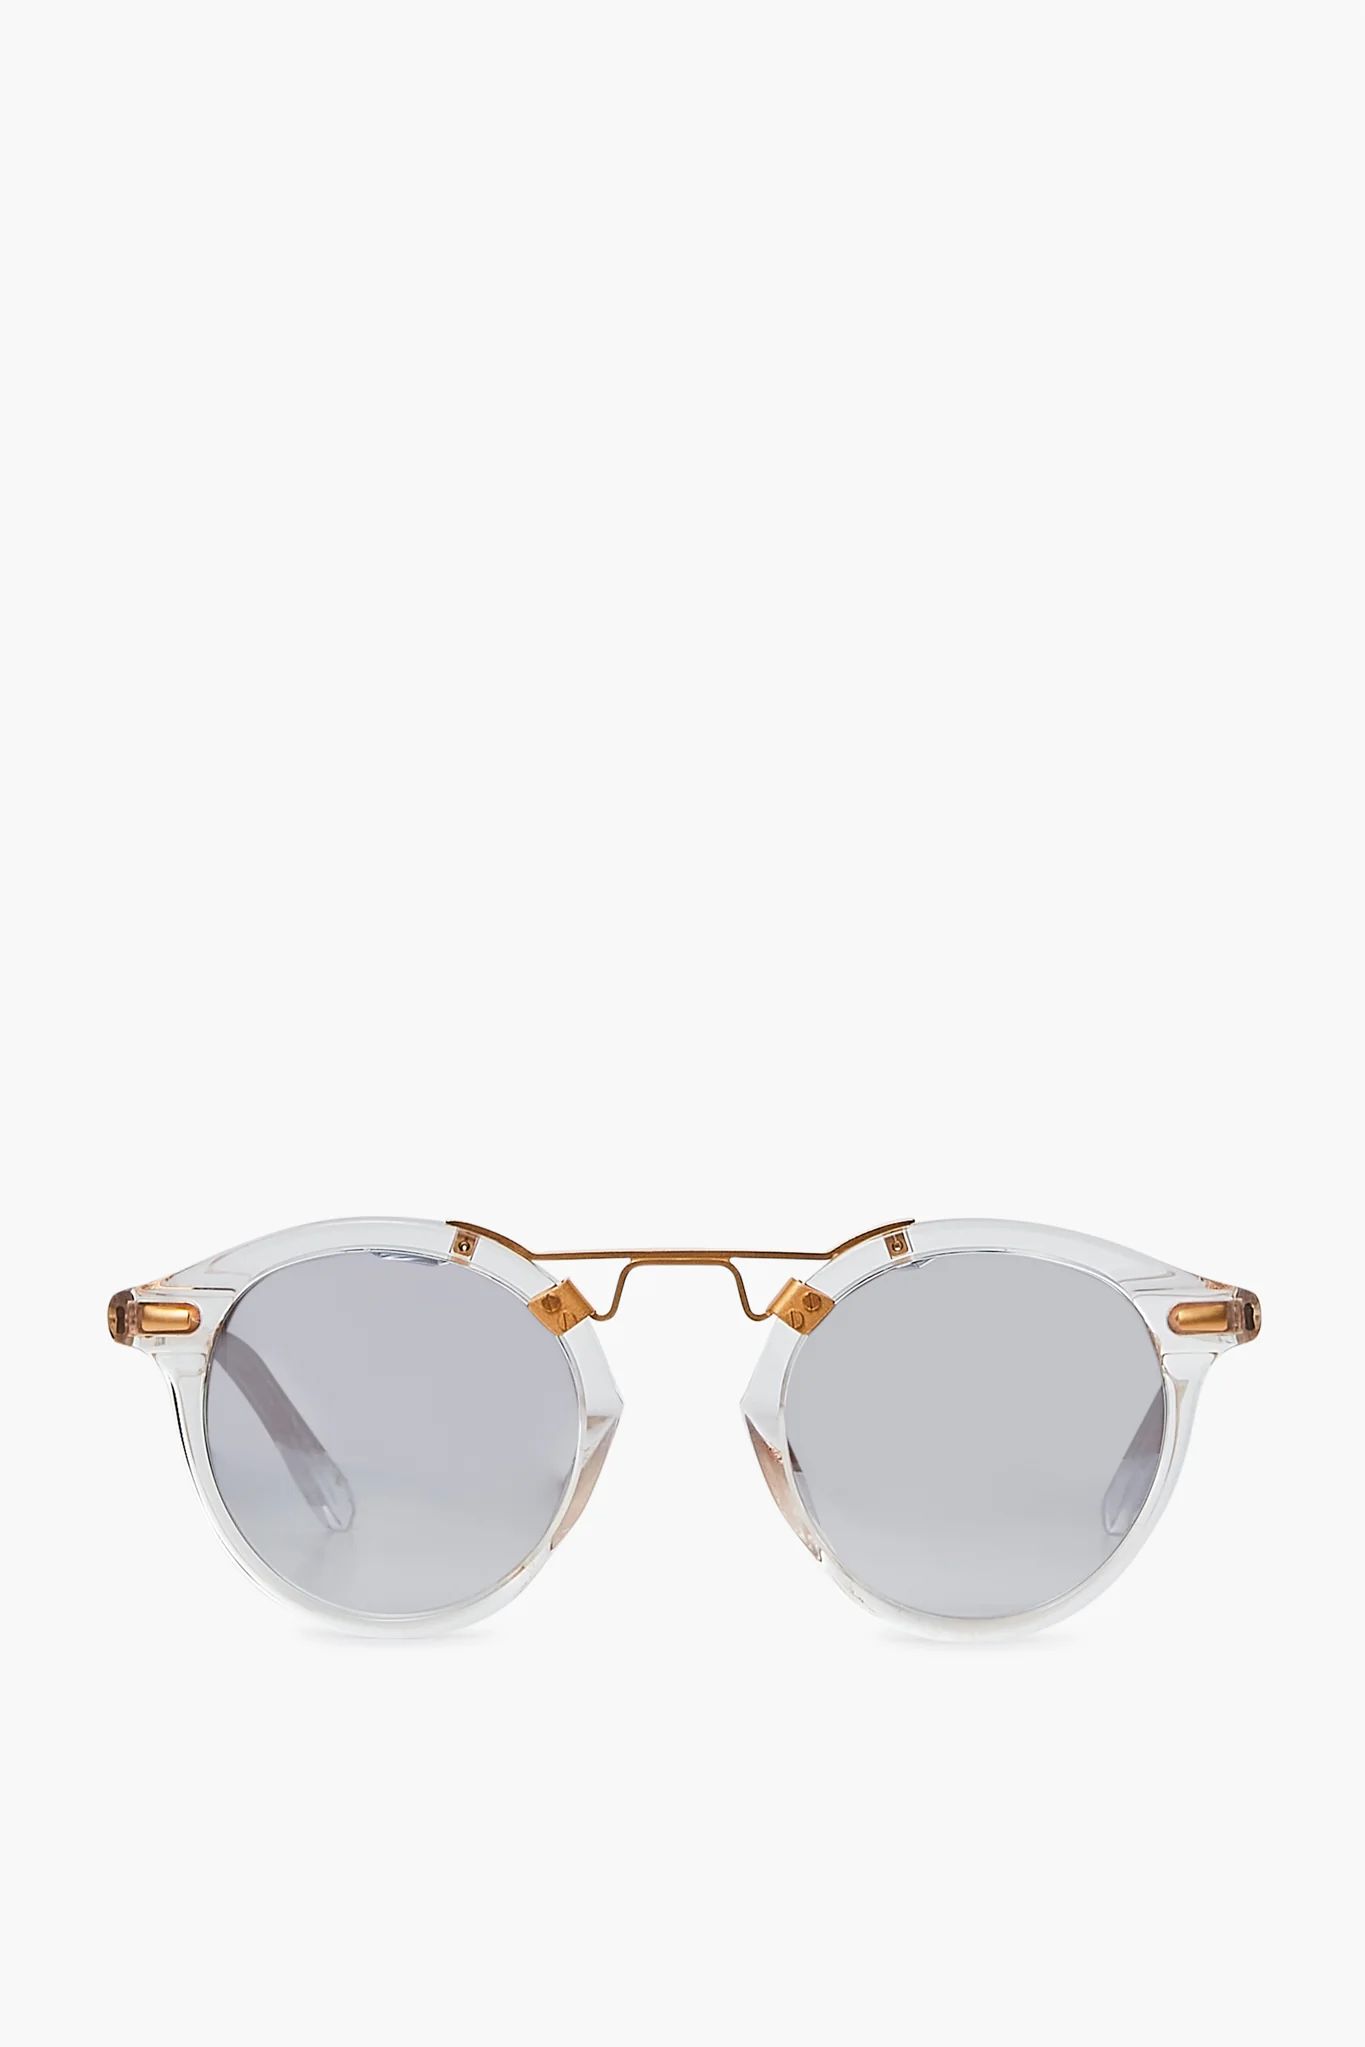 Crystal 24k St. Louis Sunglasses | Tuckernuck (US)